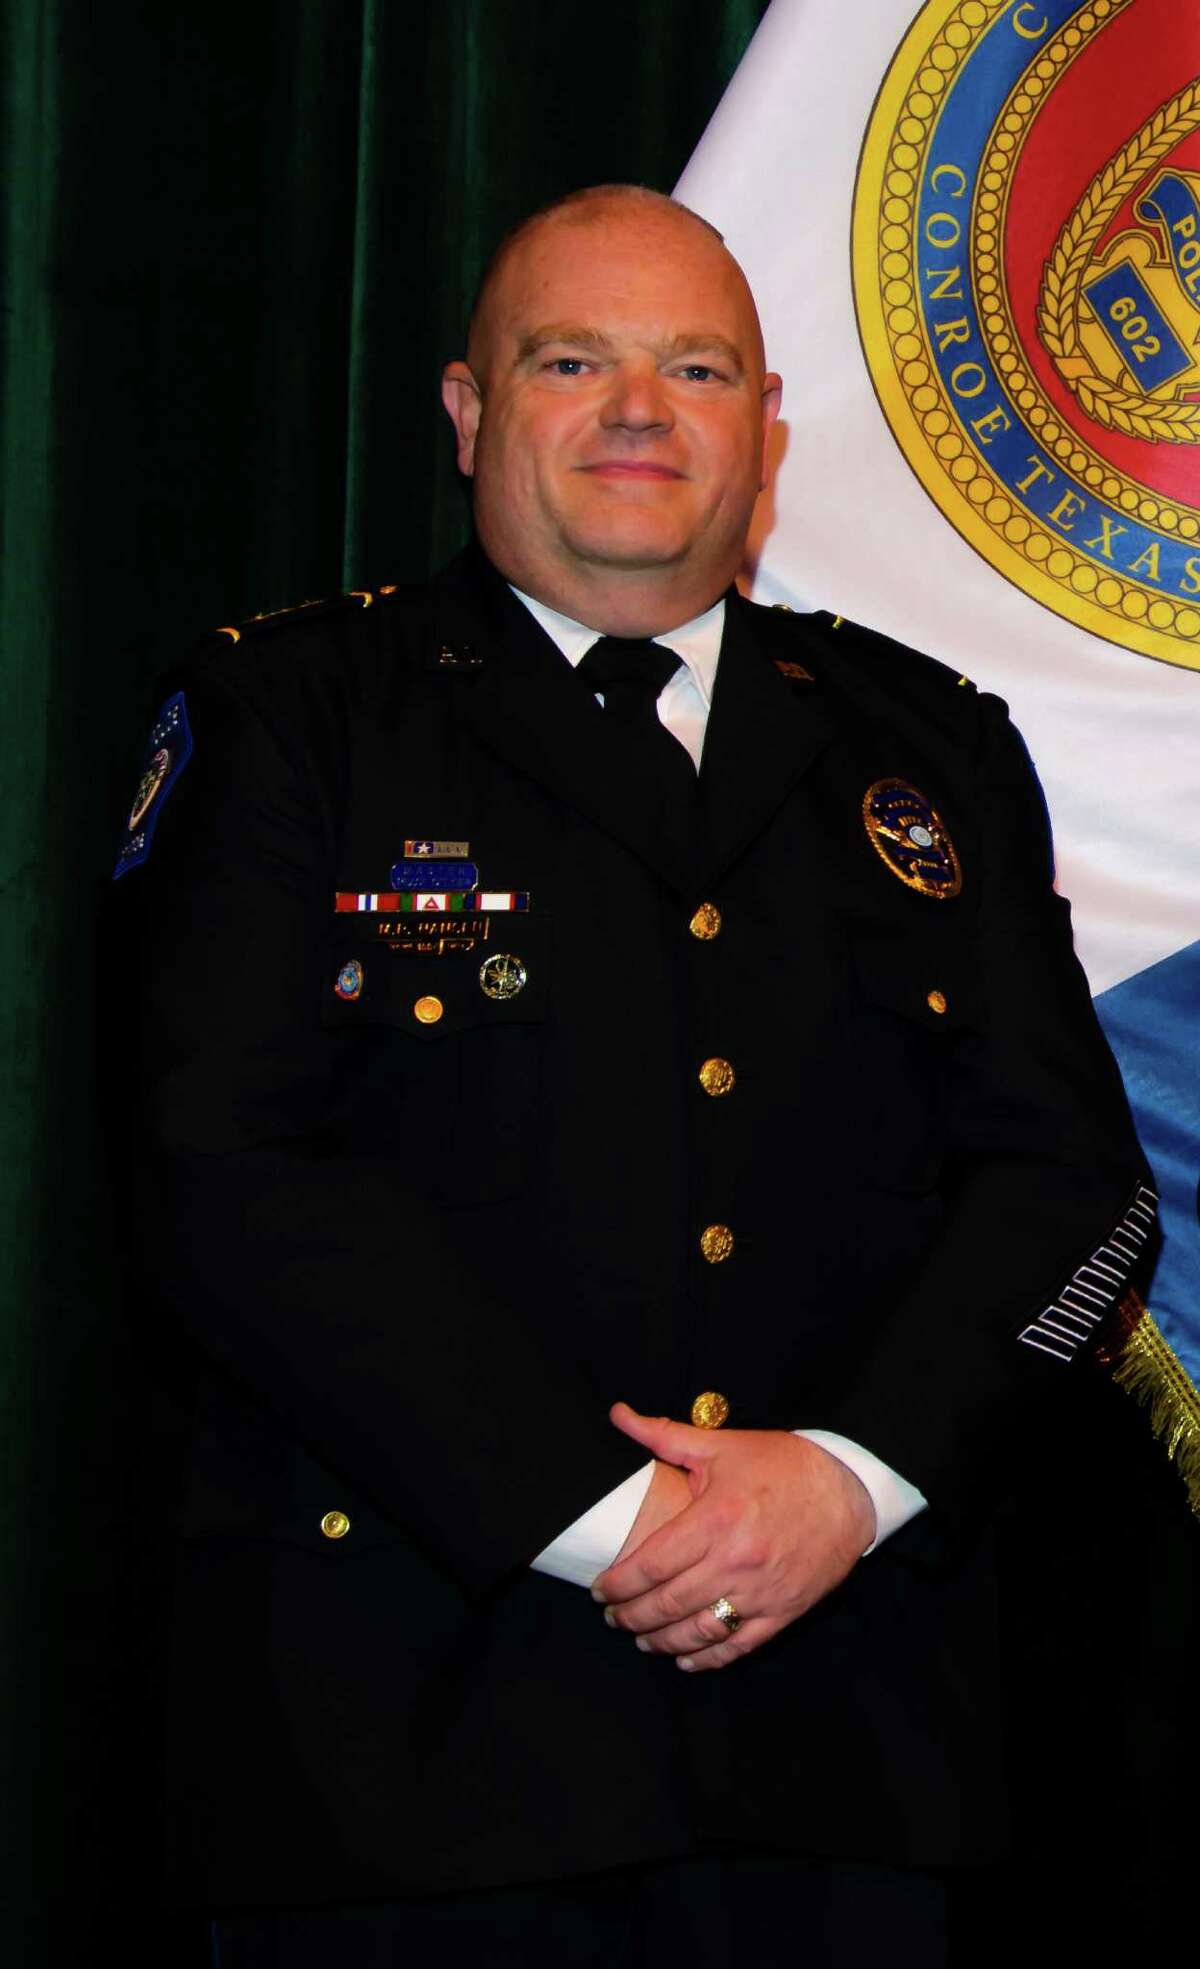 Michael R. Hansen has been named the new chief of police in Schertz.